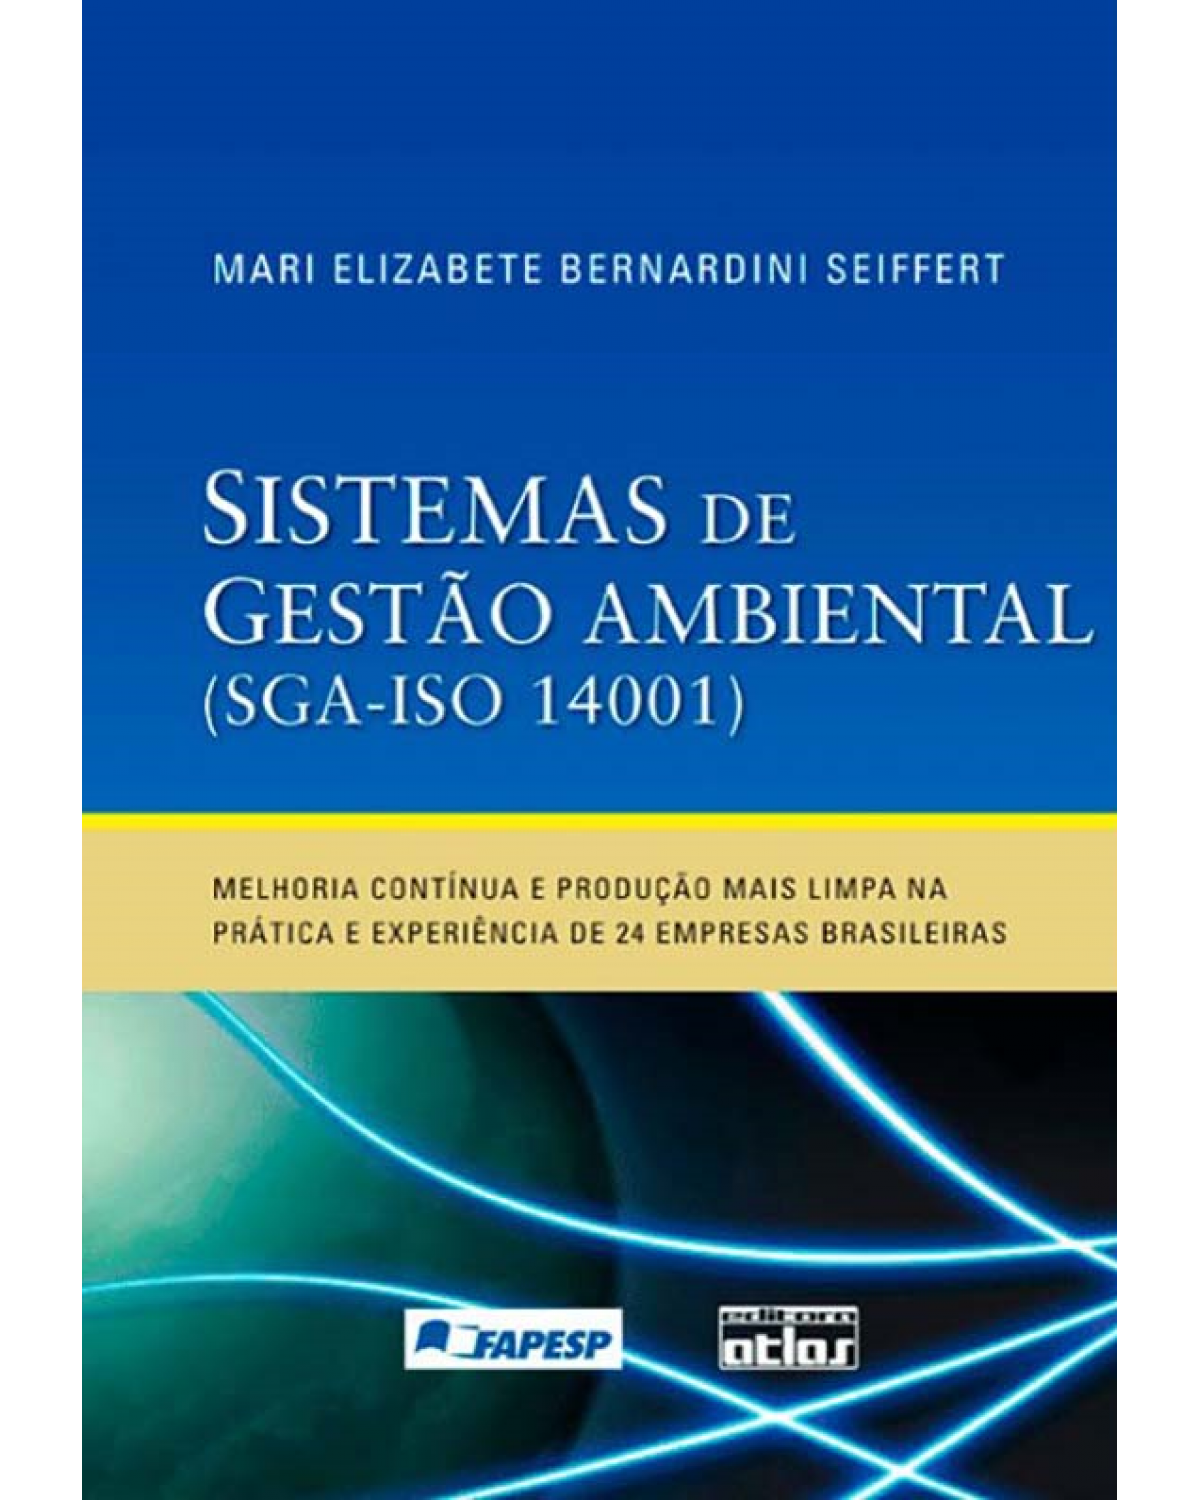 Sistemas de gestão ambiental (SGA-ISO 14001) - Melhoria contínua e produção mais limpa na prática e experiências de 24 empresas brasileiras - 1ª Edição | 2011